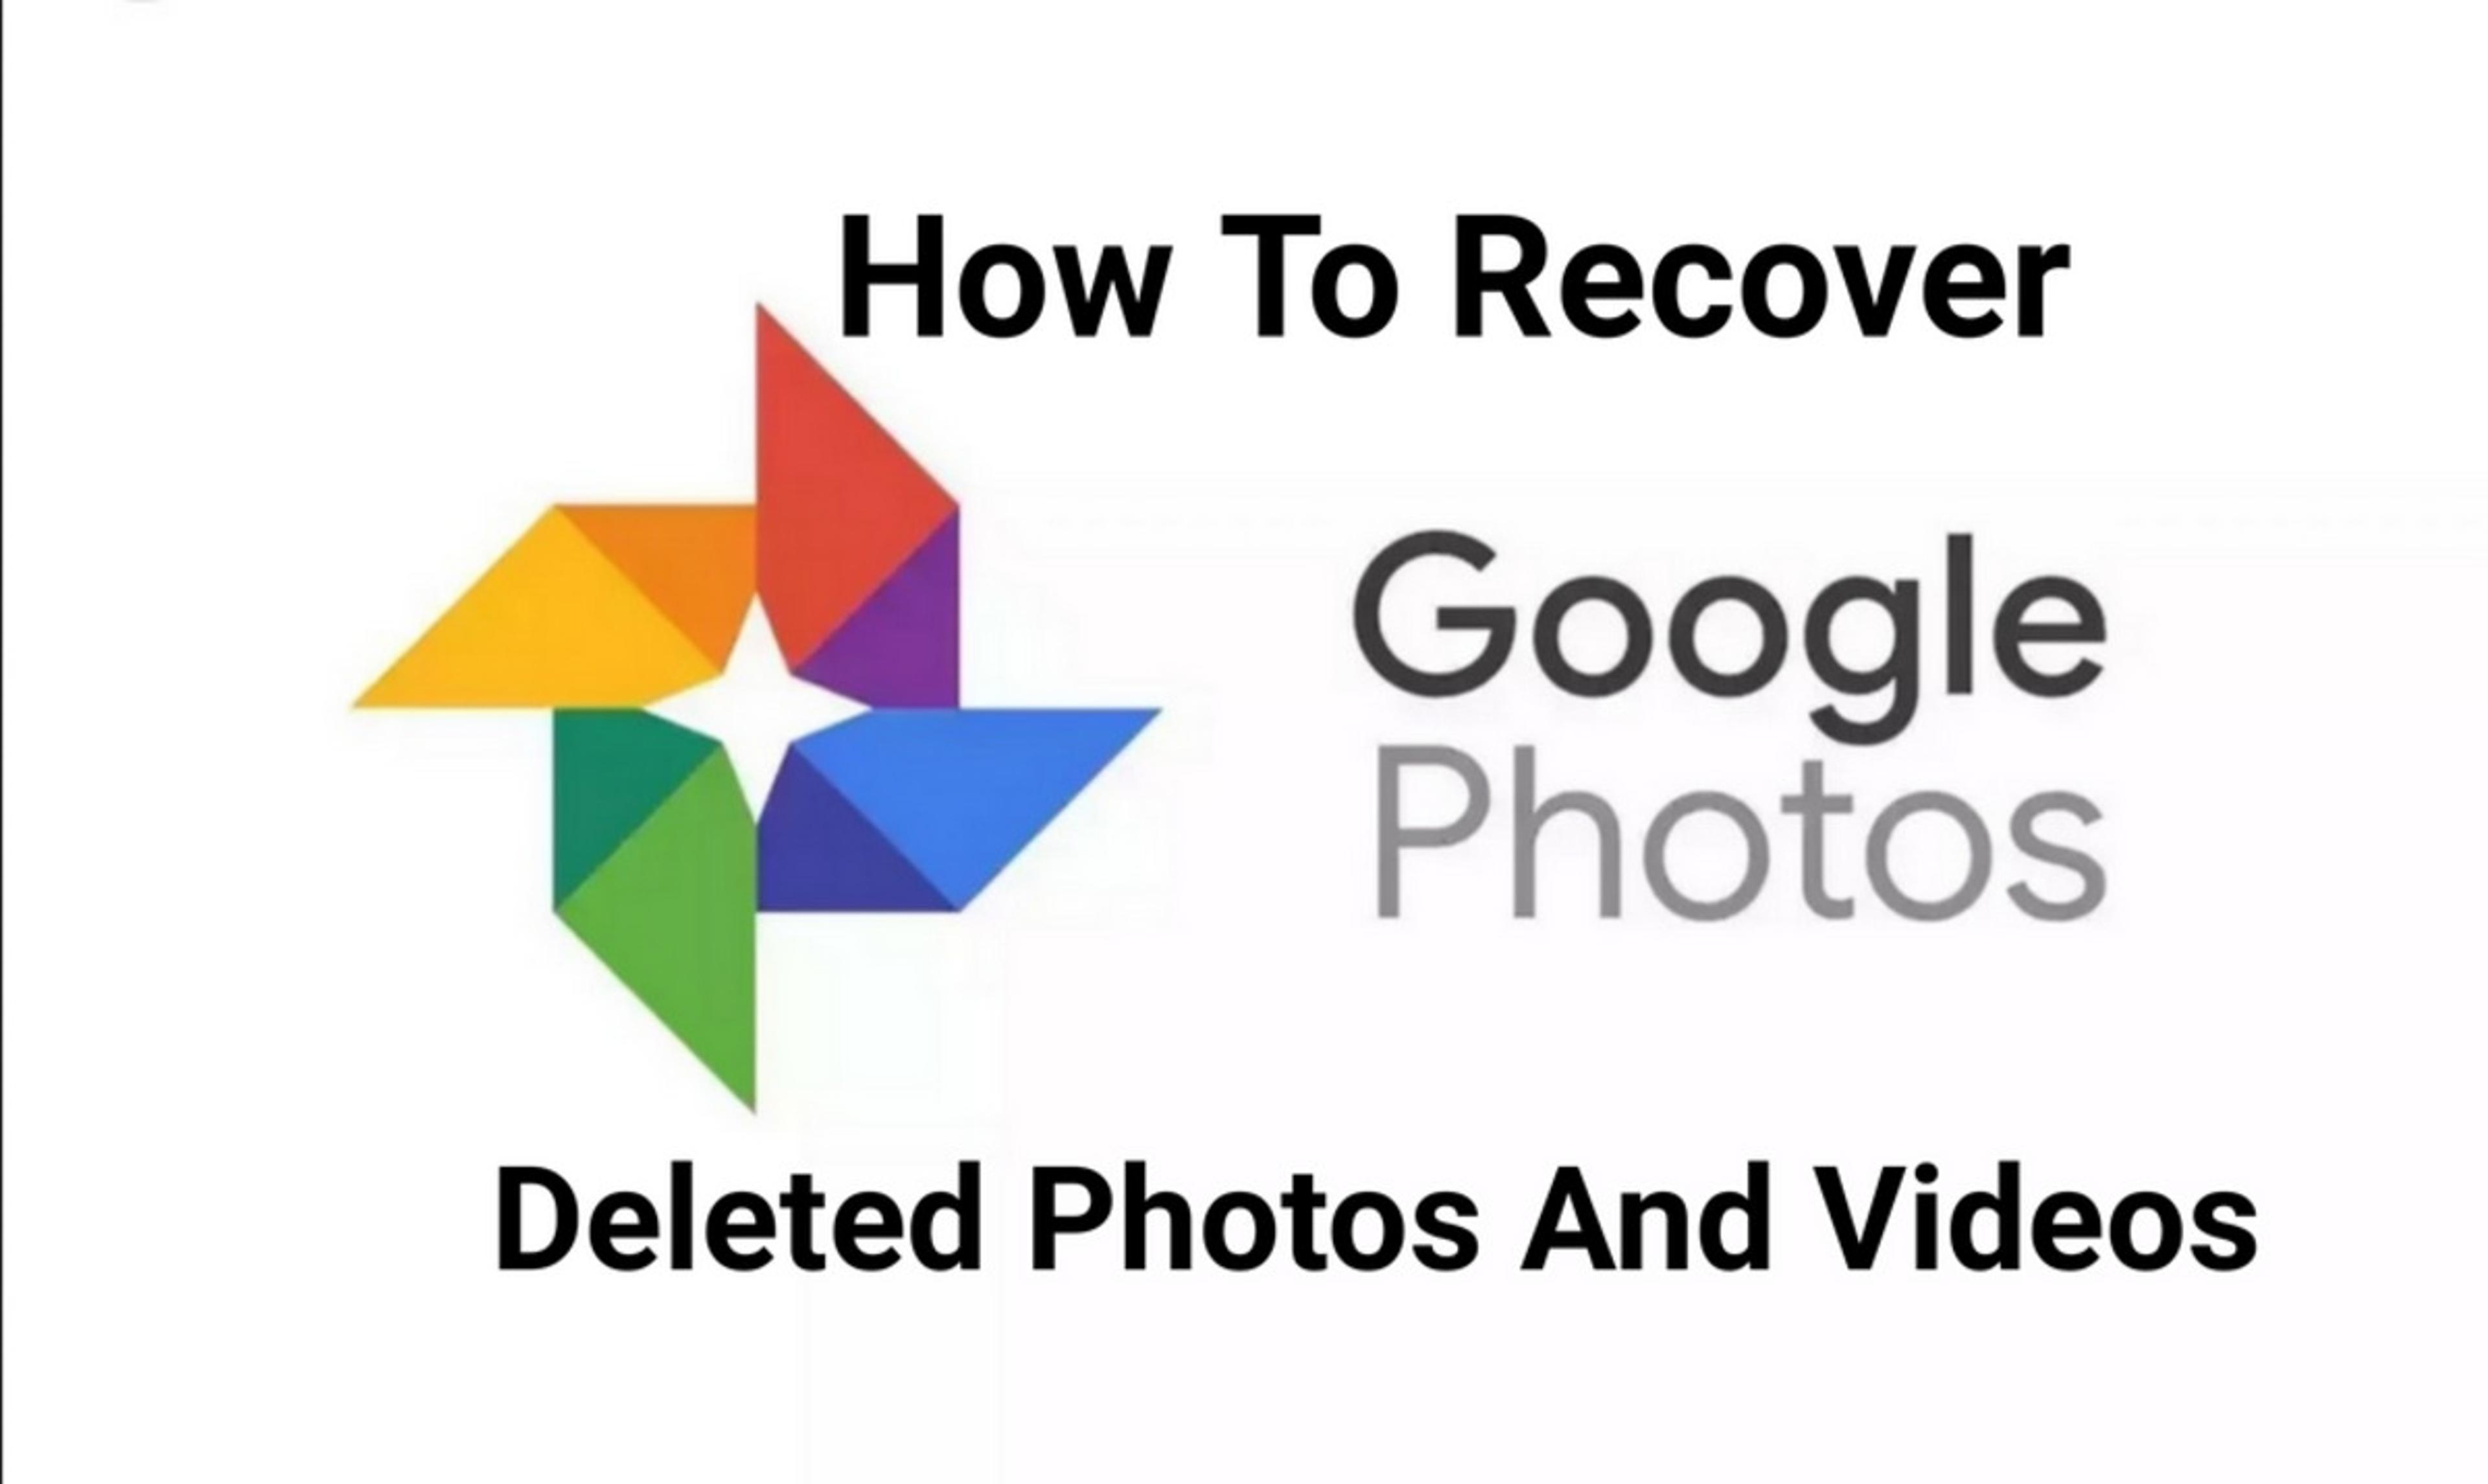 Google Photos से डिलीट हुई फोटोज़ और वीडियोज़ को कैसे करें रिकवर? जानिए बेहद आसान
तरीका